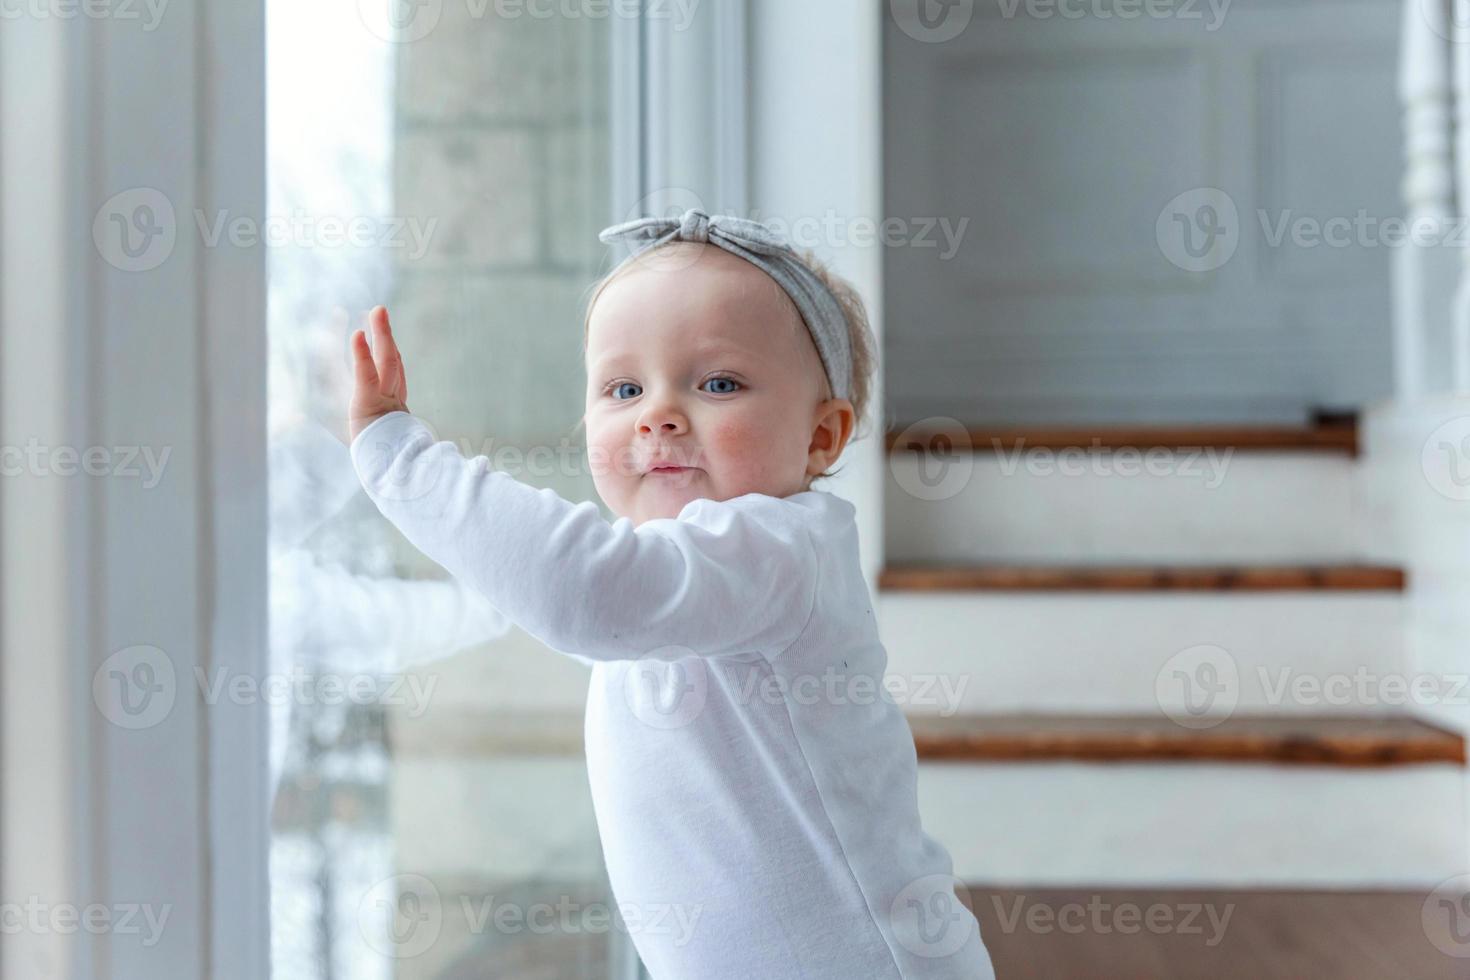 liten krypande bebis flicka ett år gammal lokaliserings på golv i ljus ljus levande rum nära fönster leende och skrattande foto